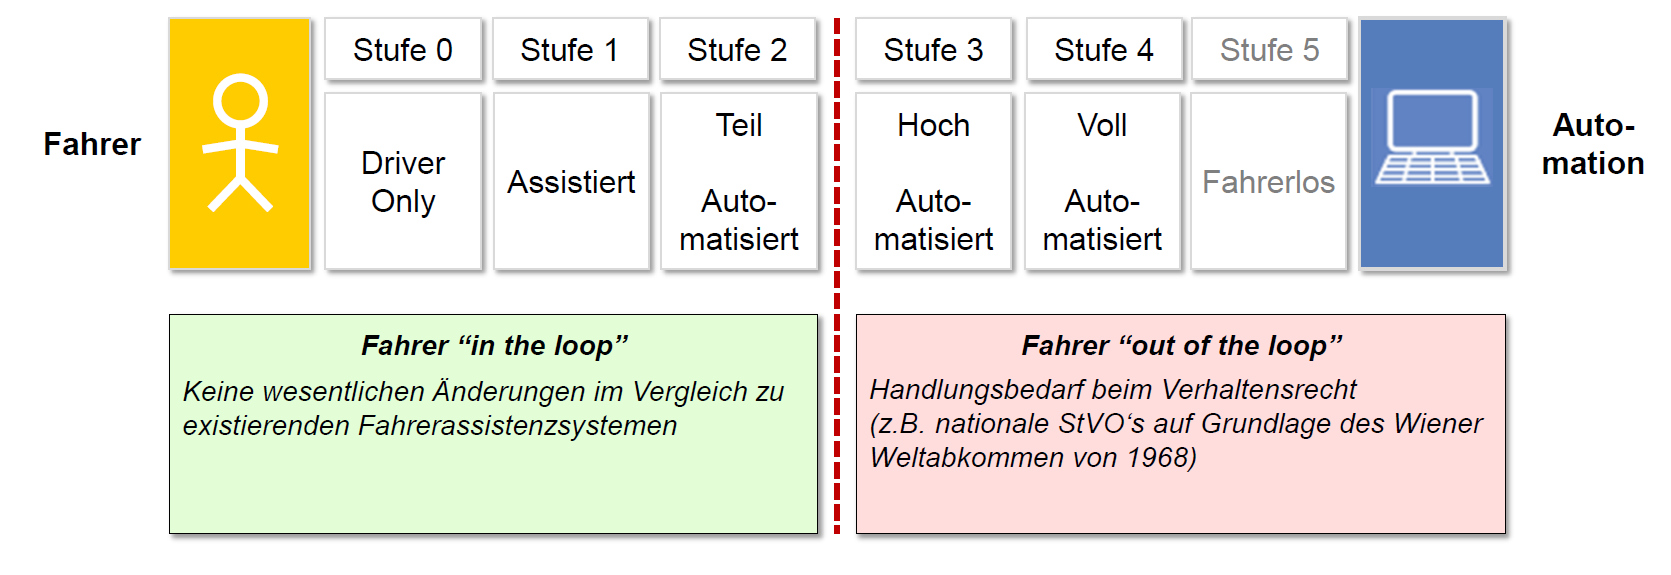 Klassifizierung Zur Klassifizierung von automatisiertem Fahren wird das 5-Stufenmodell verwendet Die Stufen 4 und 5 können auch als Autonomes